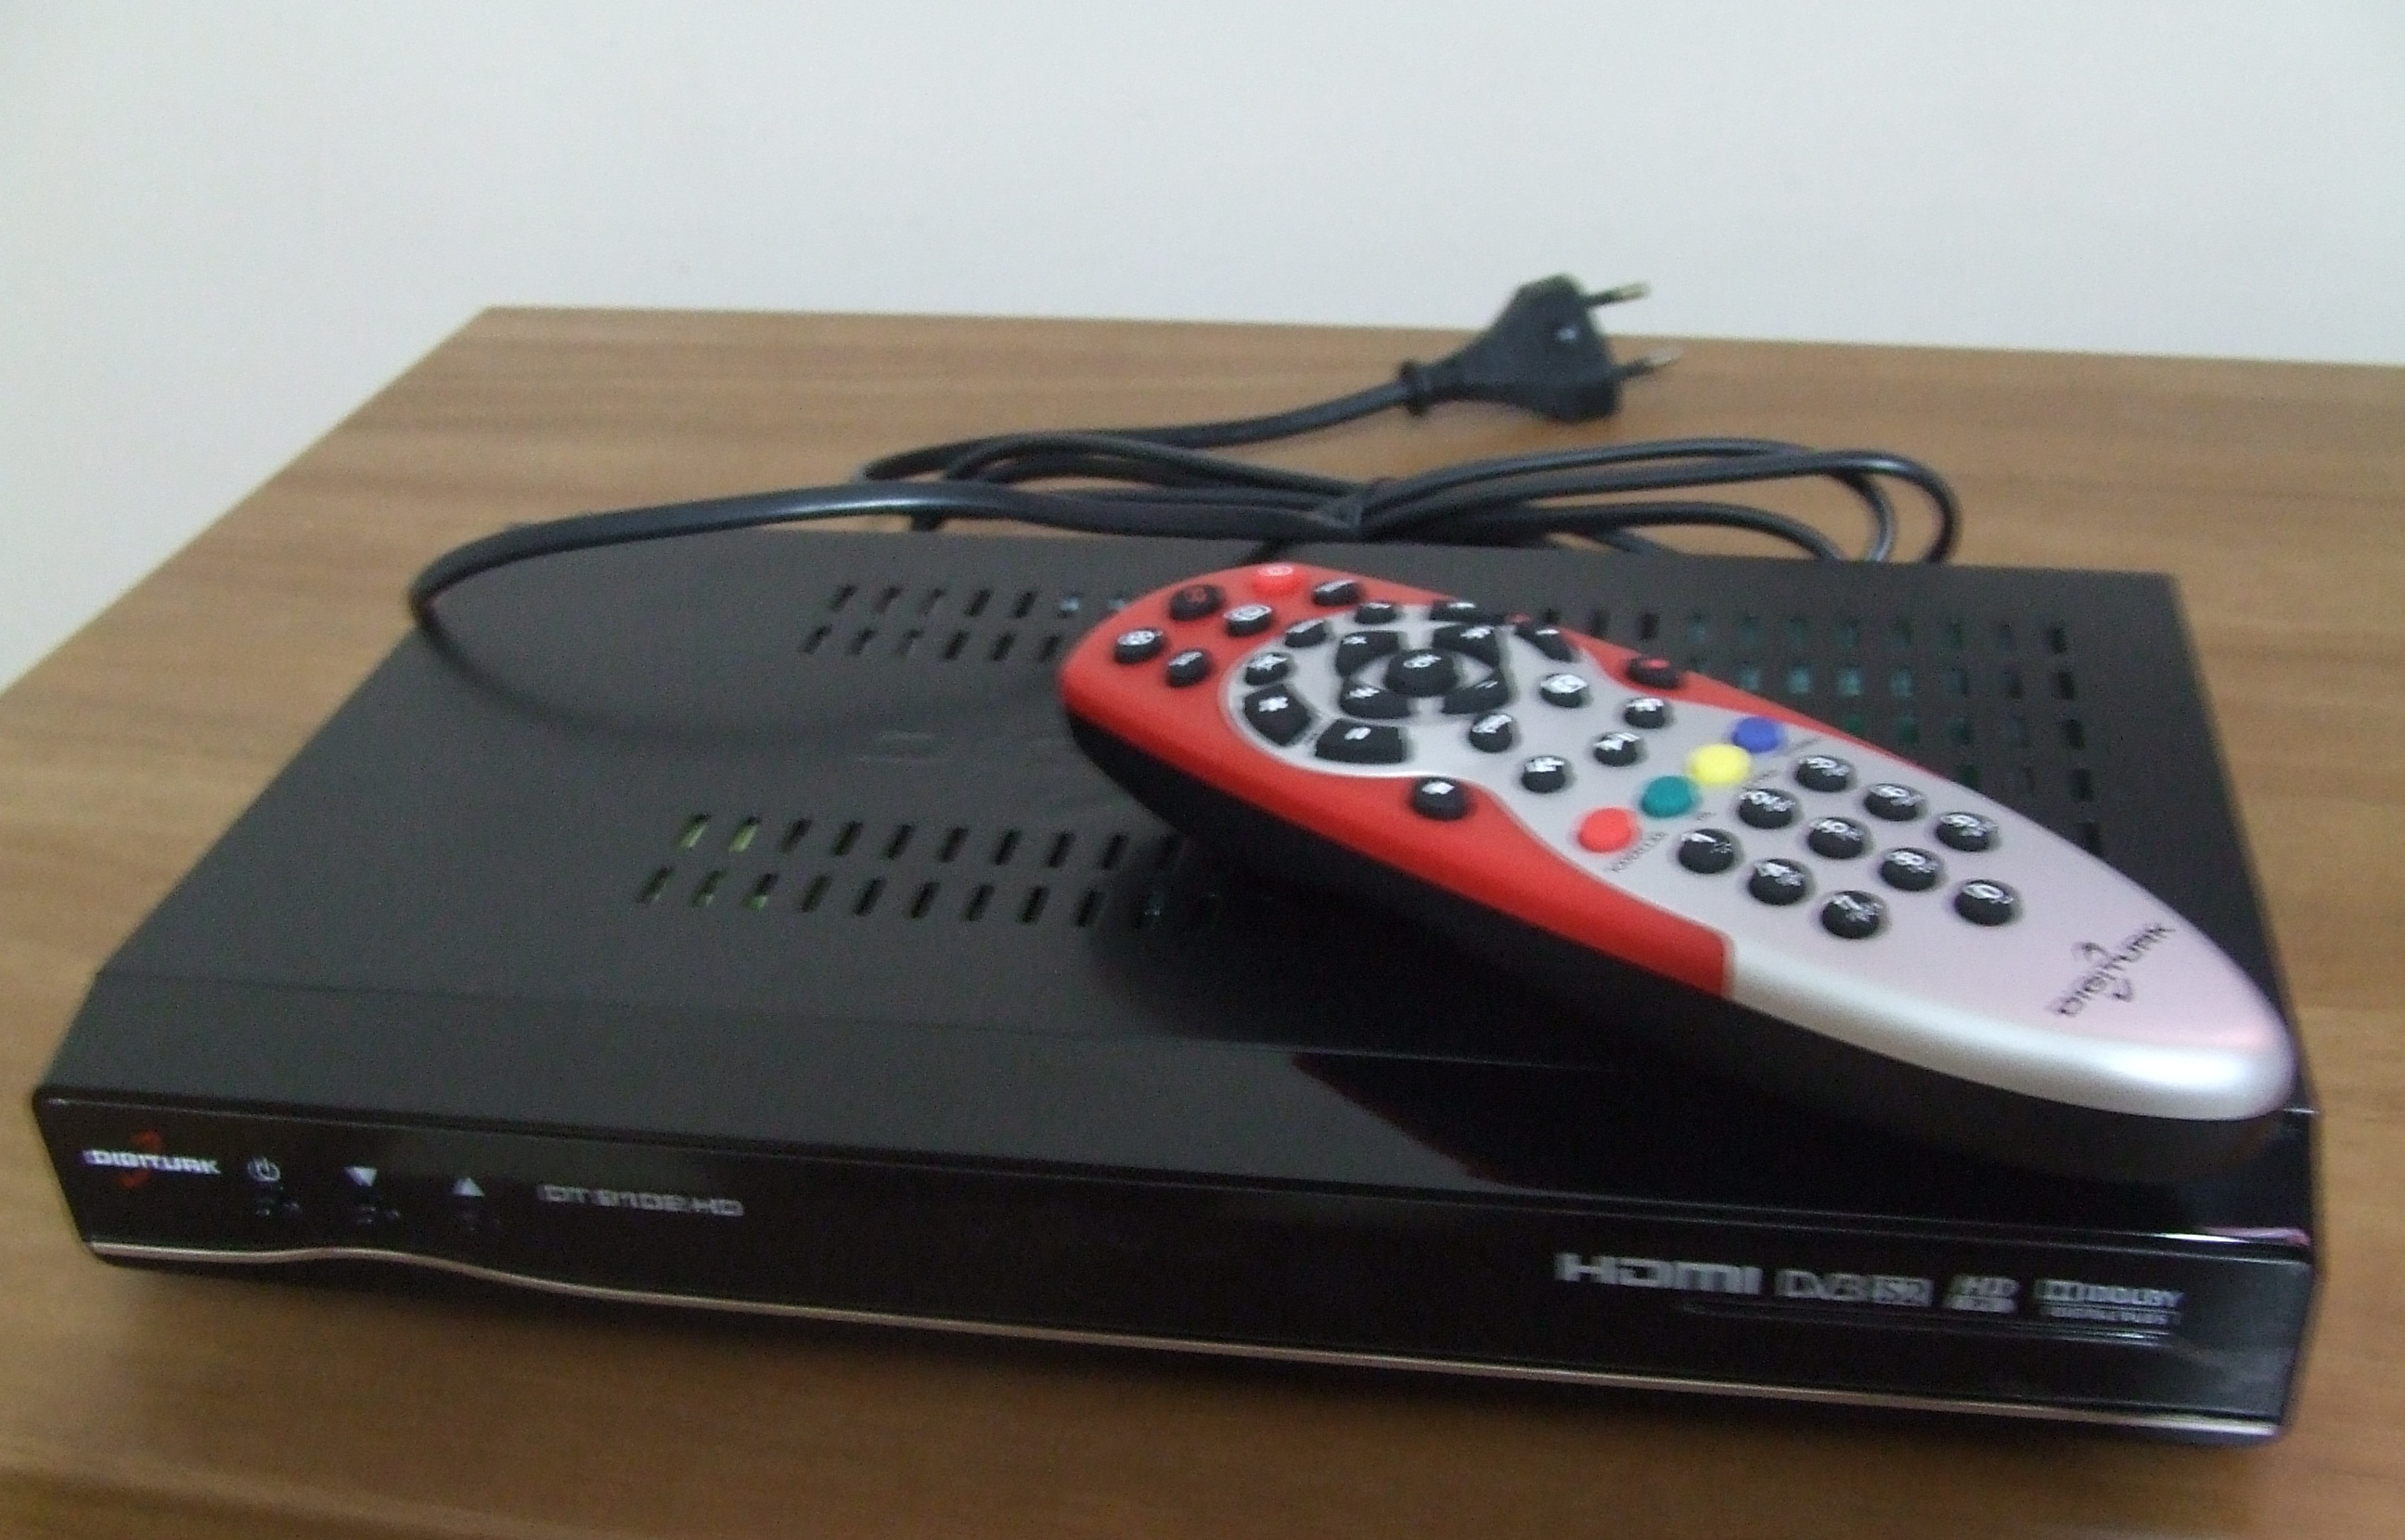  Mönitör, TV'ye çevirmek için en uygun uydu alıcısı